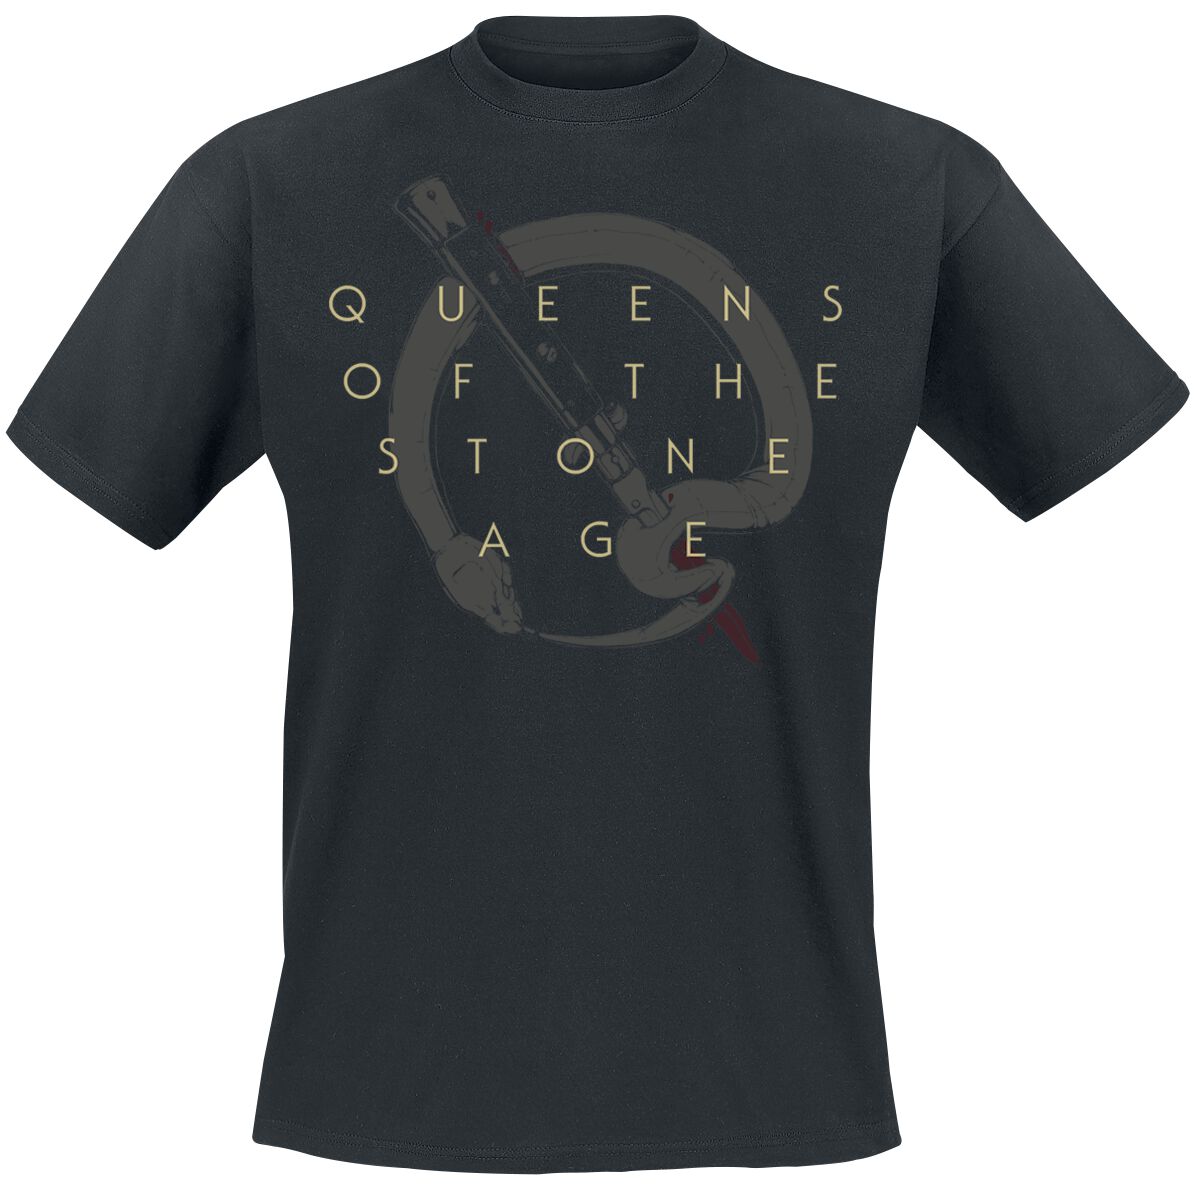 Queens Of The Stone Age T-Shirt - In Times New Roman - Bad Dog - S bis 3XL - für Männer - Größe 3XL - schwarz  - Lizenziertes Merchandise!